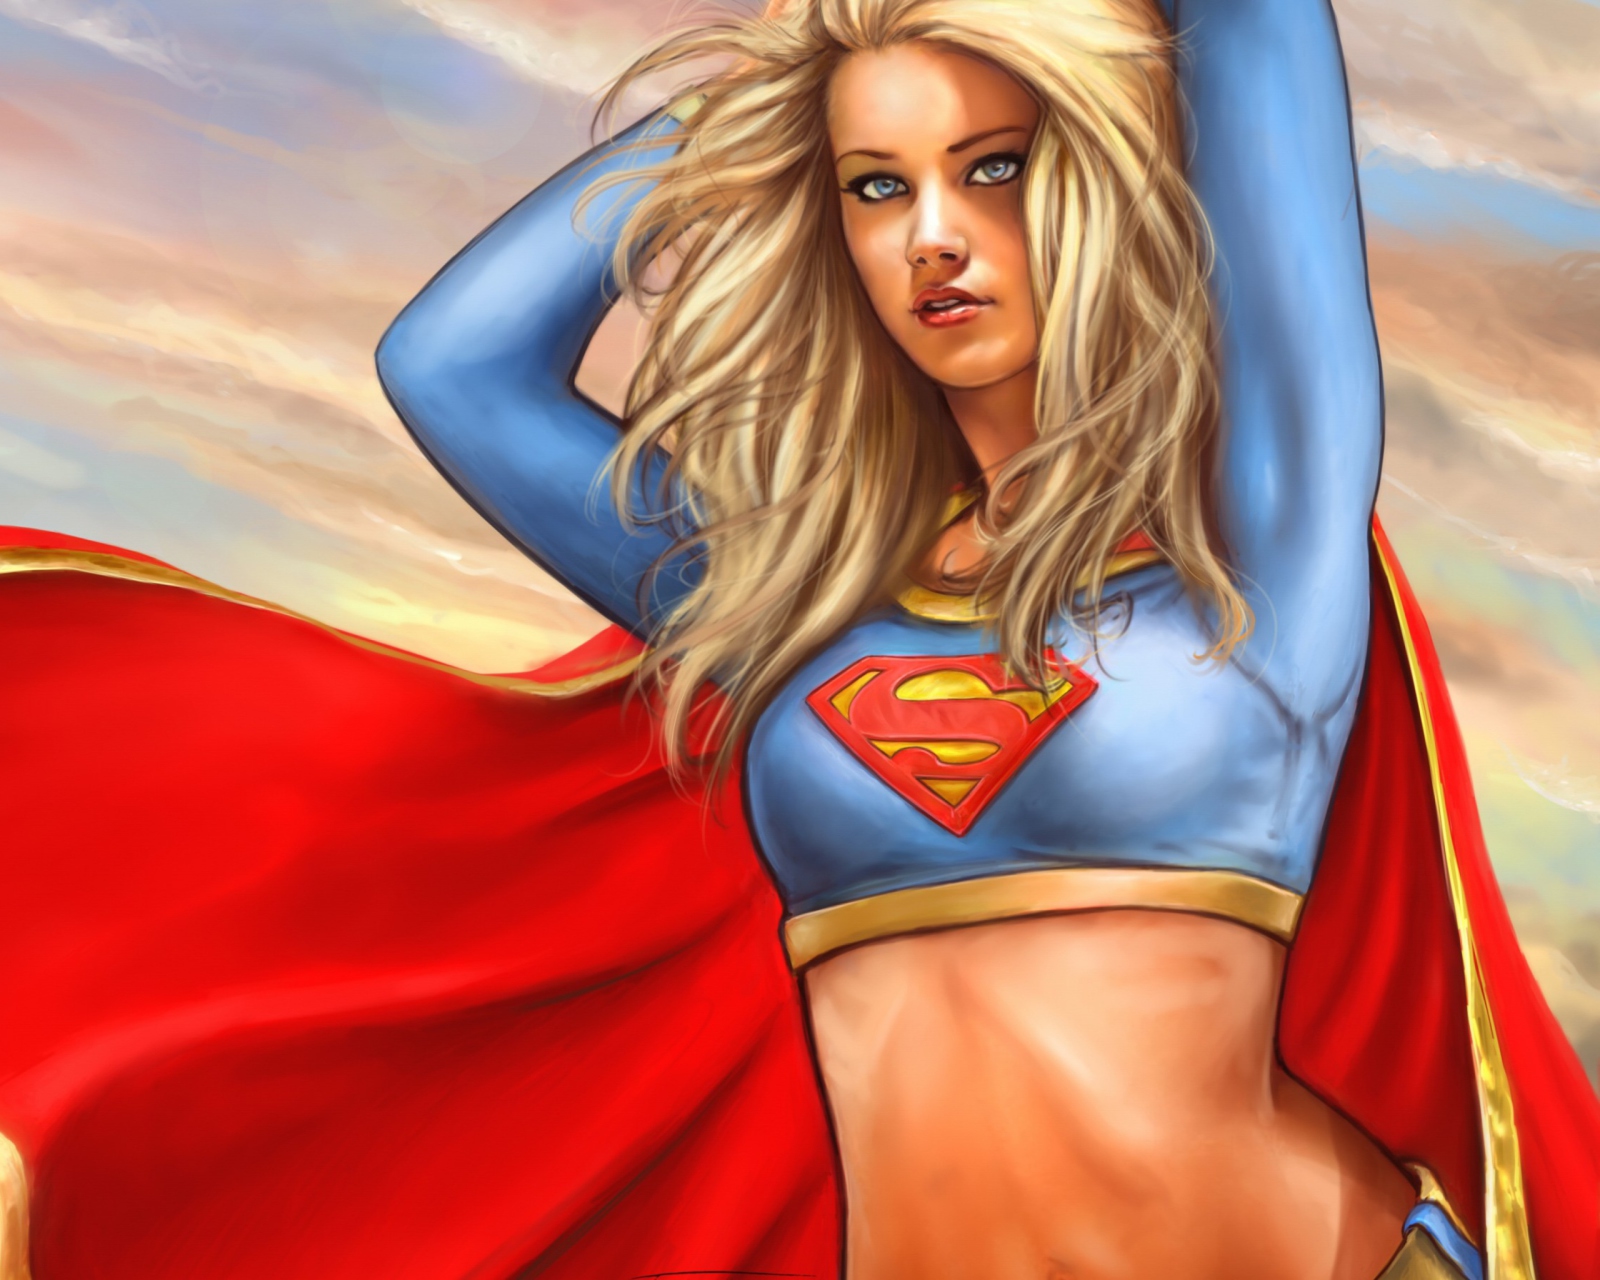 Marvel Supergirl DC Comics wallpaper 1600x1280